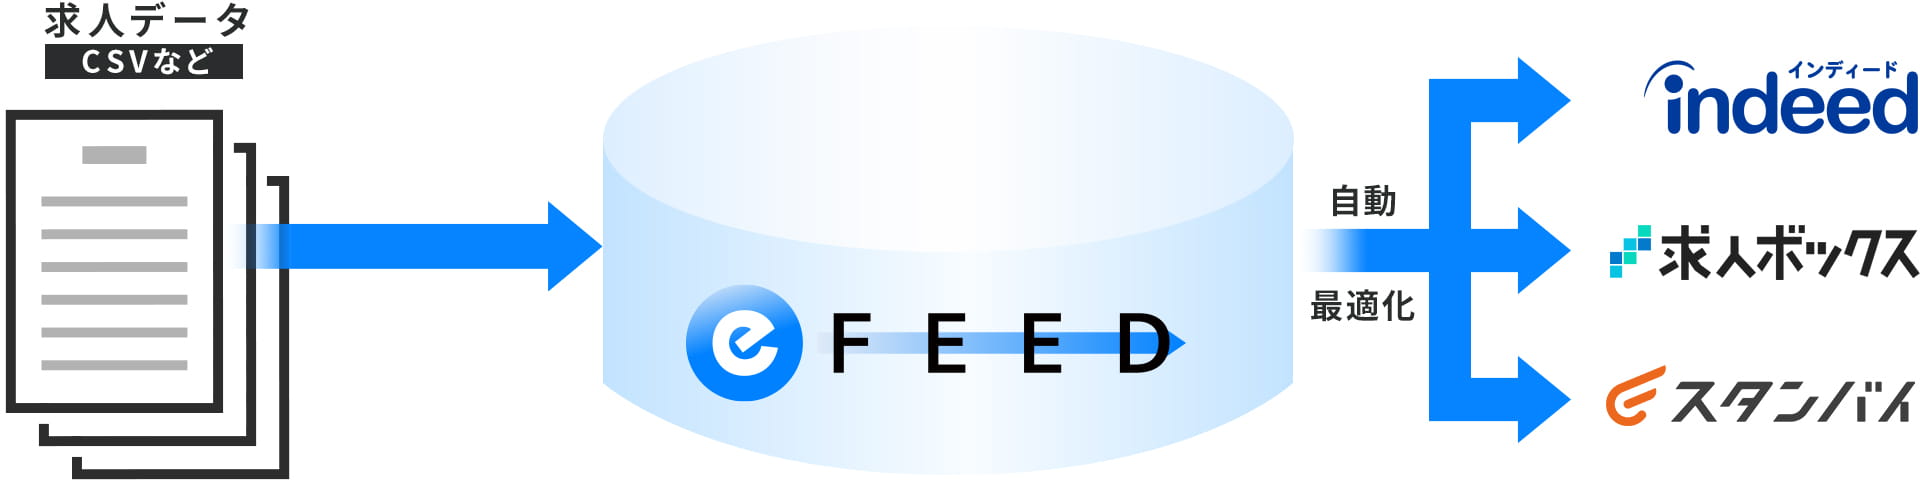 e-FEEDの概要図